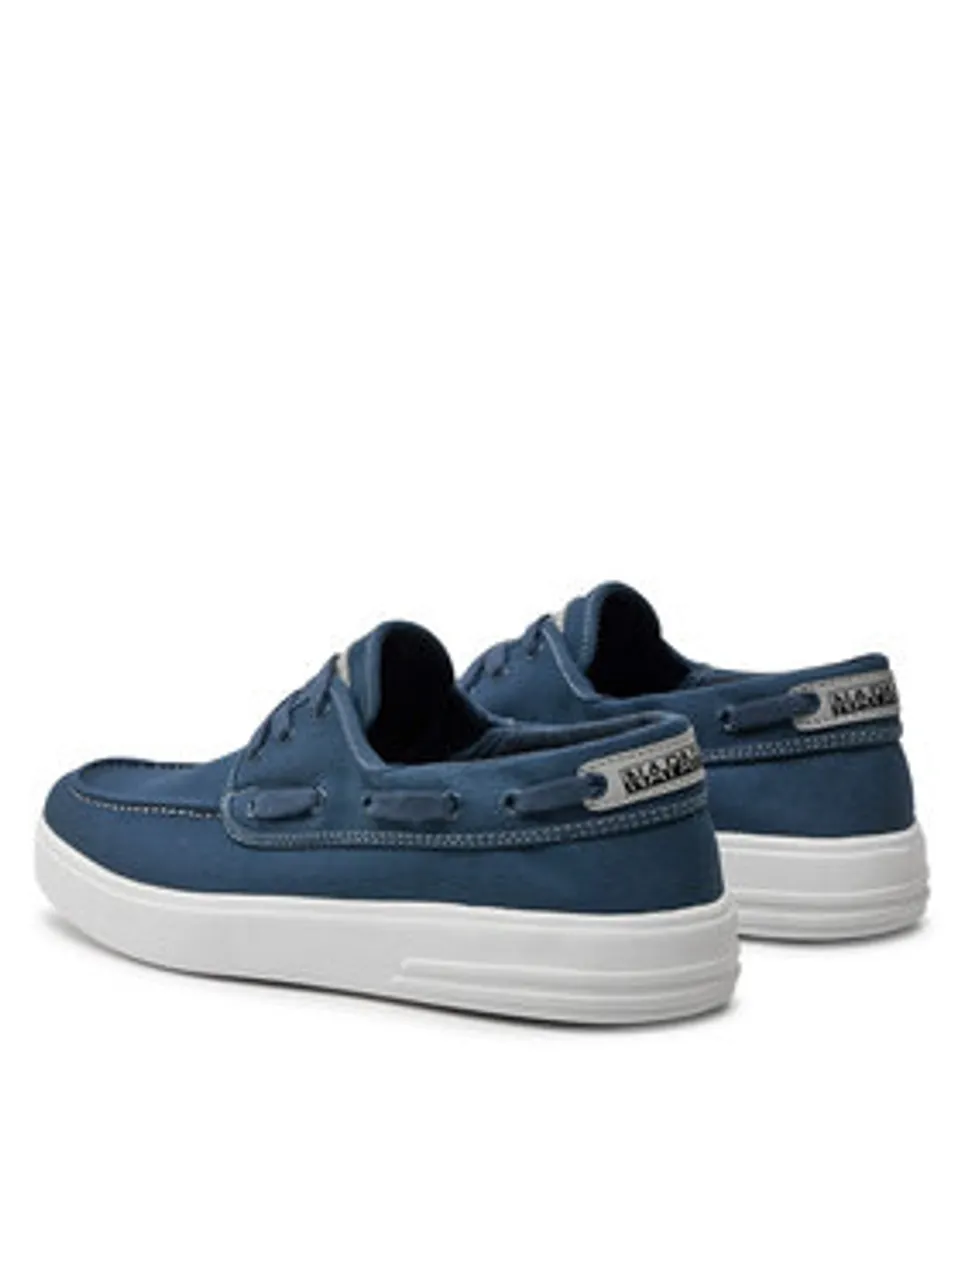 Napapijri Sneakers NP0A4I7I Blau